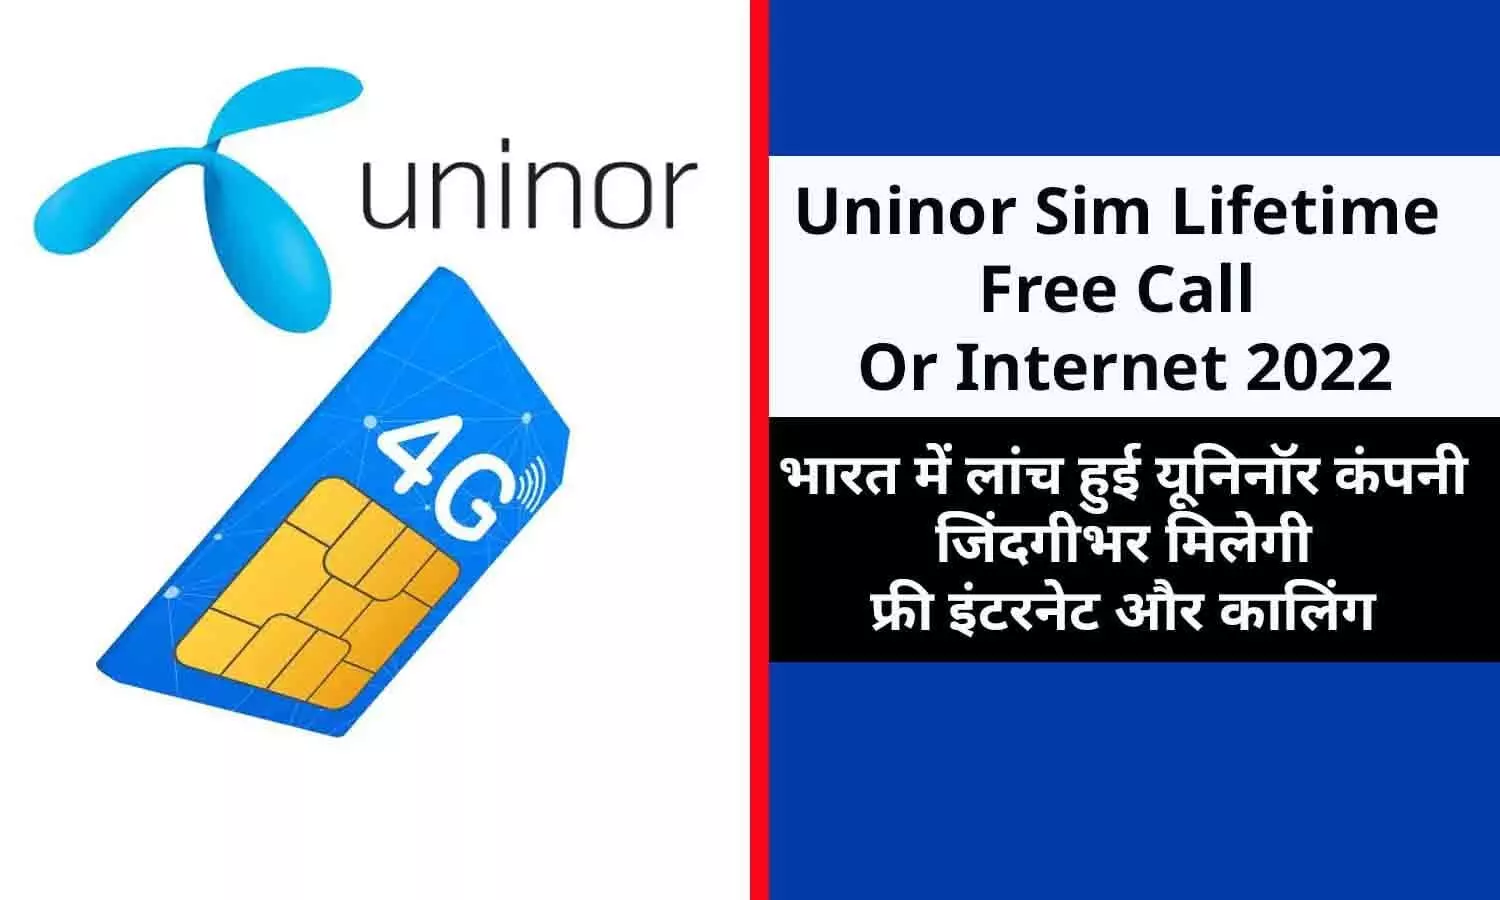 Uninor Sim Lifetime Free Call Or Internet 2022: यूनिनॉर कंपनी ने ग्राहकों को जिंदगीभर फ्री इंटरनेट और कालिंग देने का ऐलान किया, सिम यहाँ से बुक करे, बिन देर किए फटाफट जाने